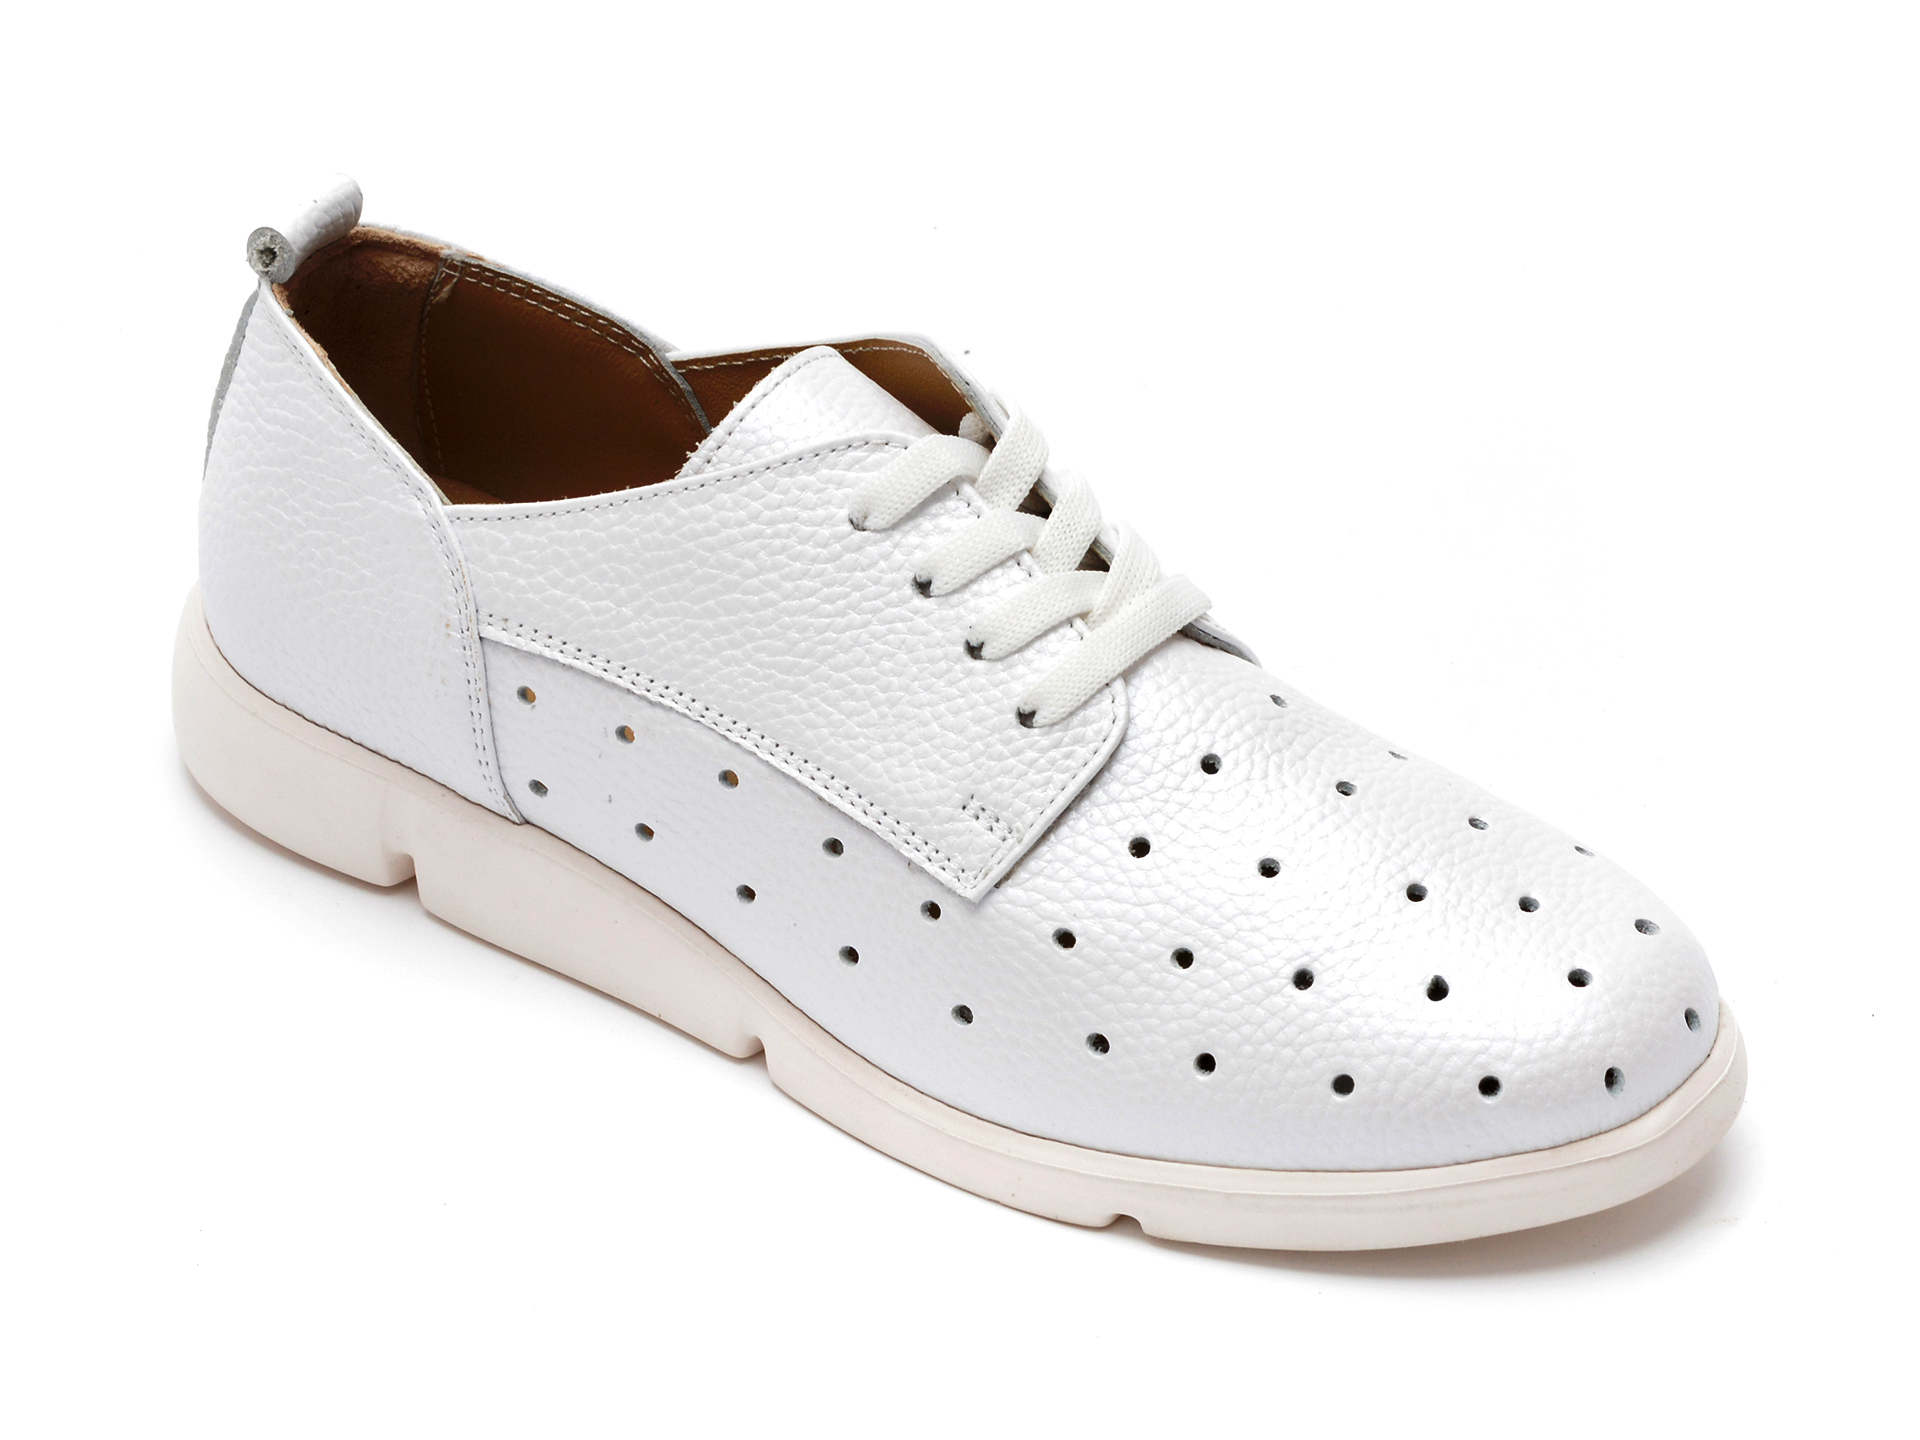 Pantofi FLAVIA PASSINI albi, 772, din piele naturala Flavia Passini